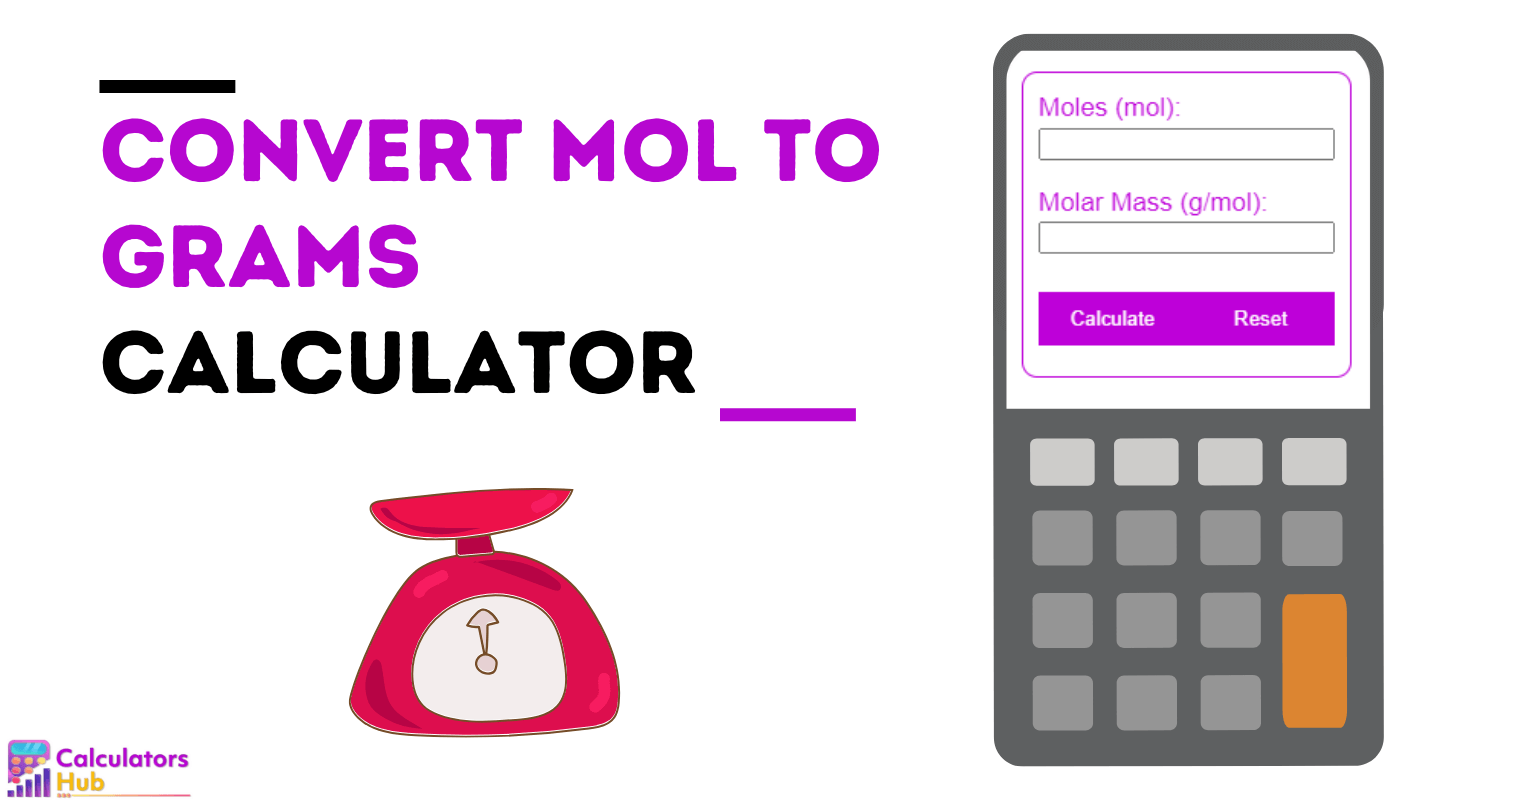 Convert Mol to Grams Calculator